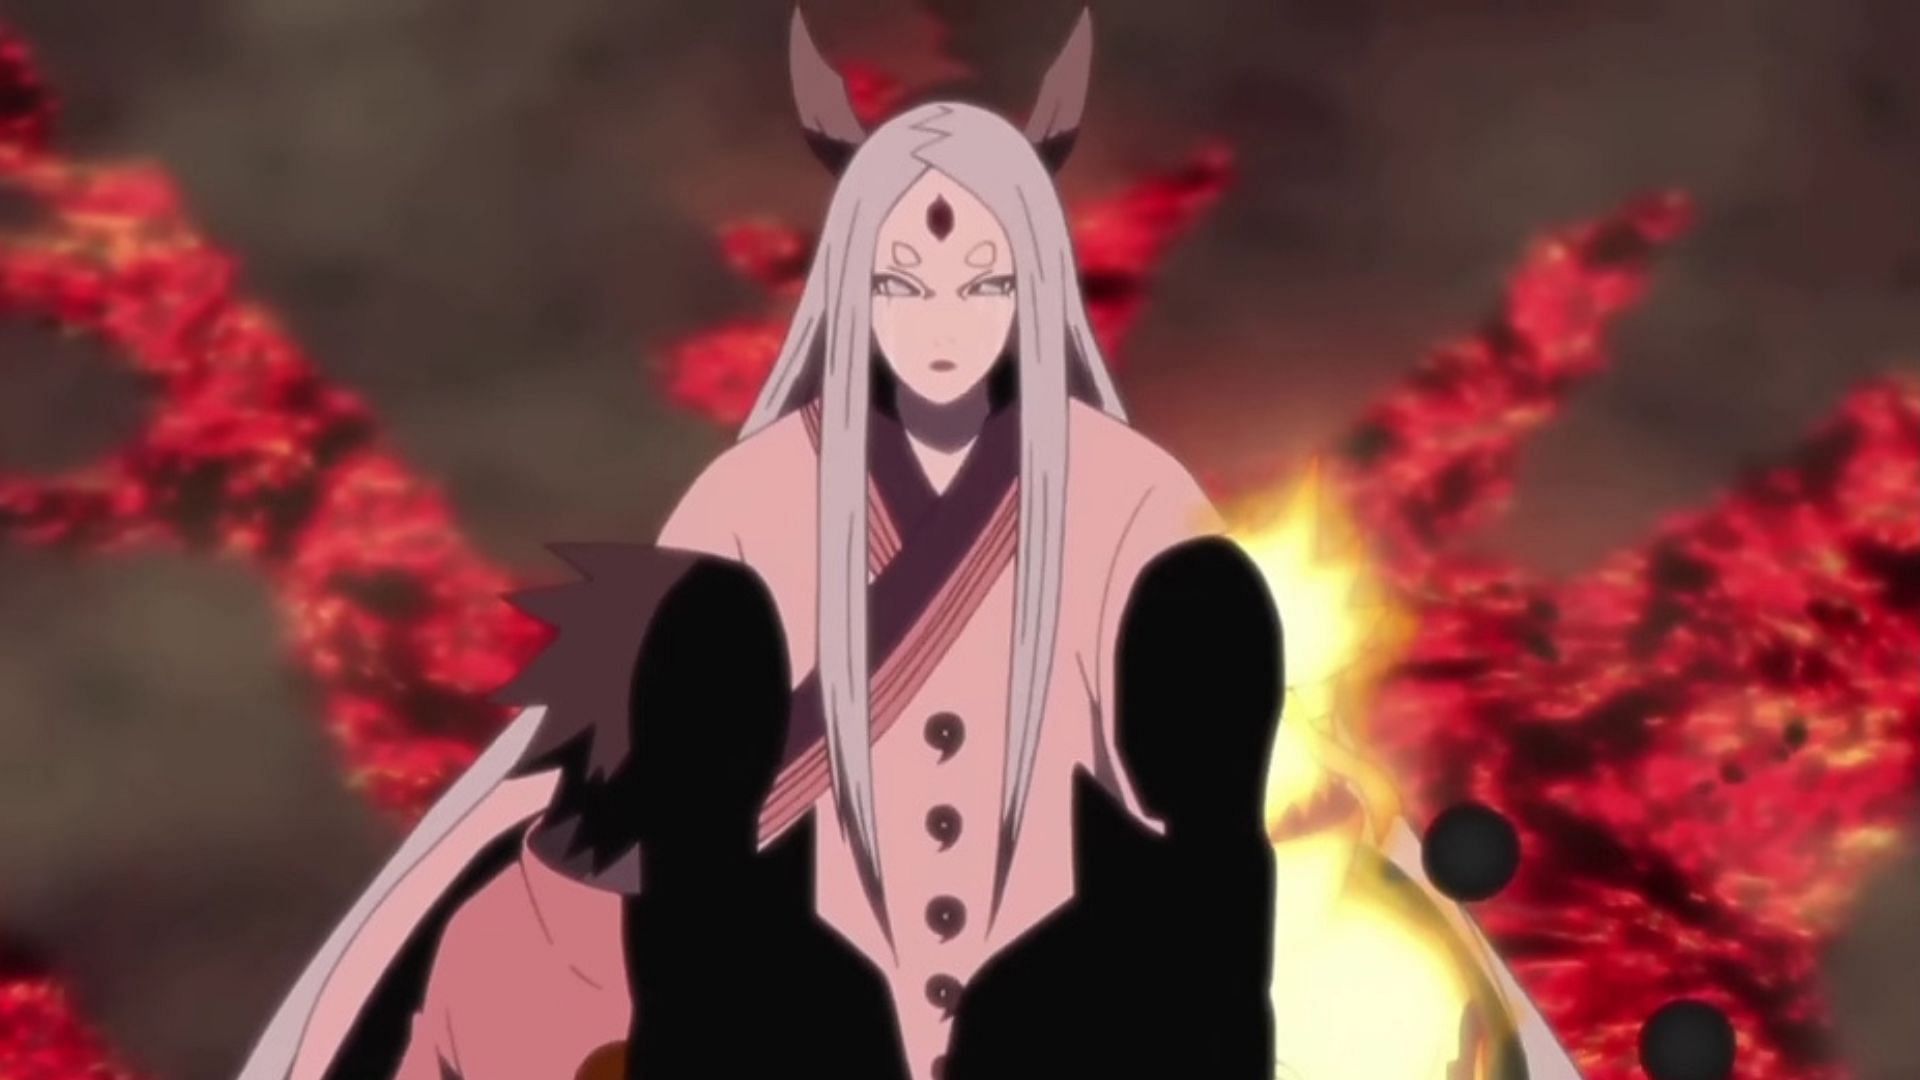 Kaguya Otsutsuki as seen in the anime Naruto (Image via Studio Pierrot)